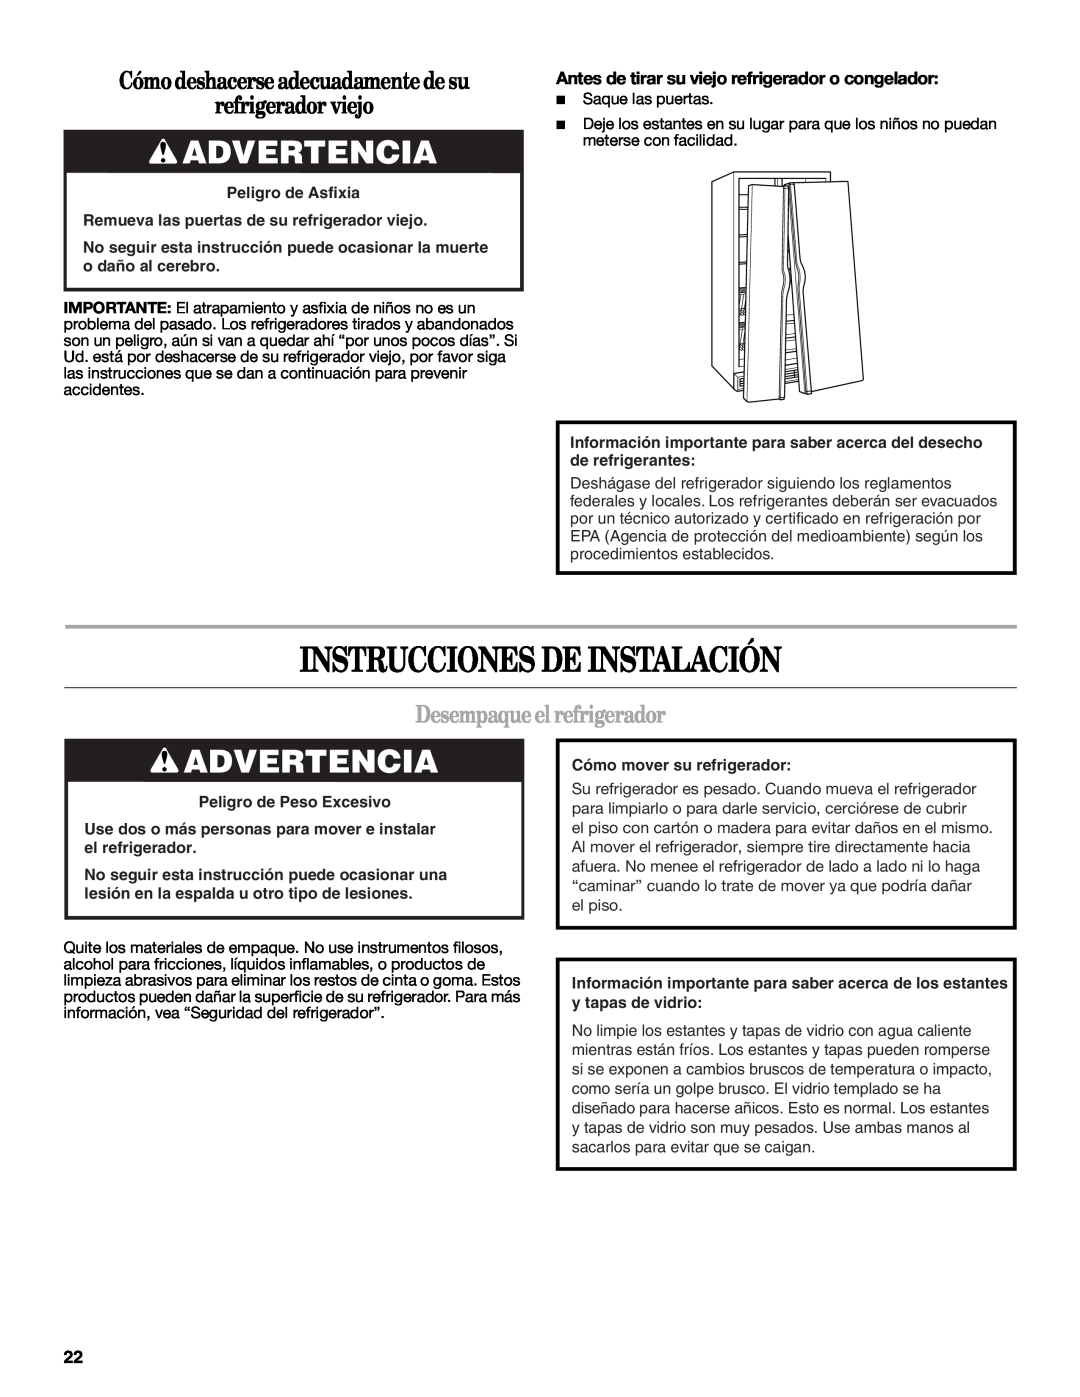 Whirlpool WSF26C2EXF Instrucciones De Instalación, Advertencia, Cómo deshacerse adecuadamente de su refrigerador viejo 